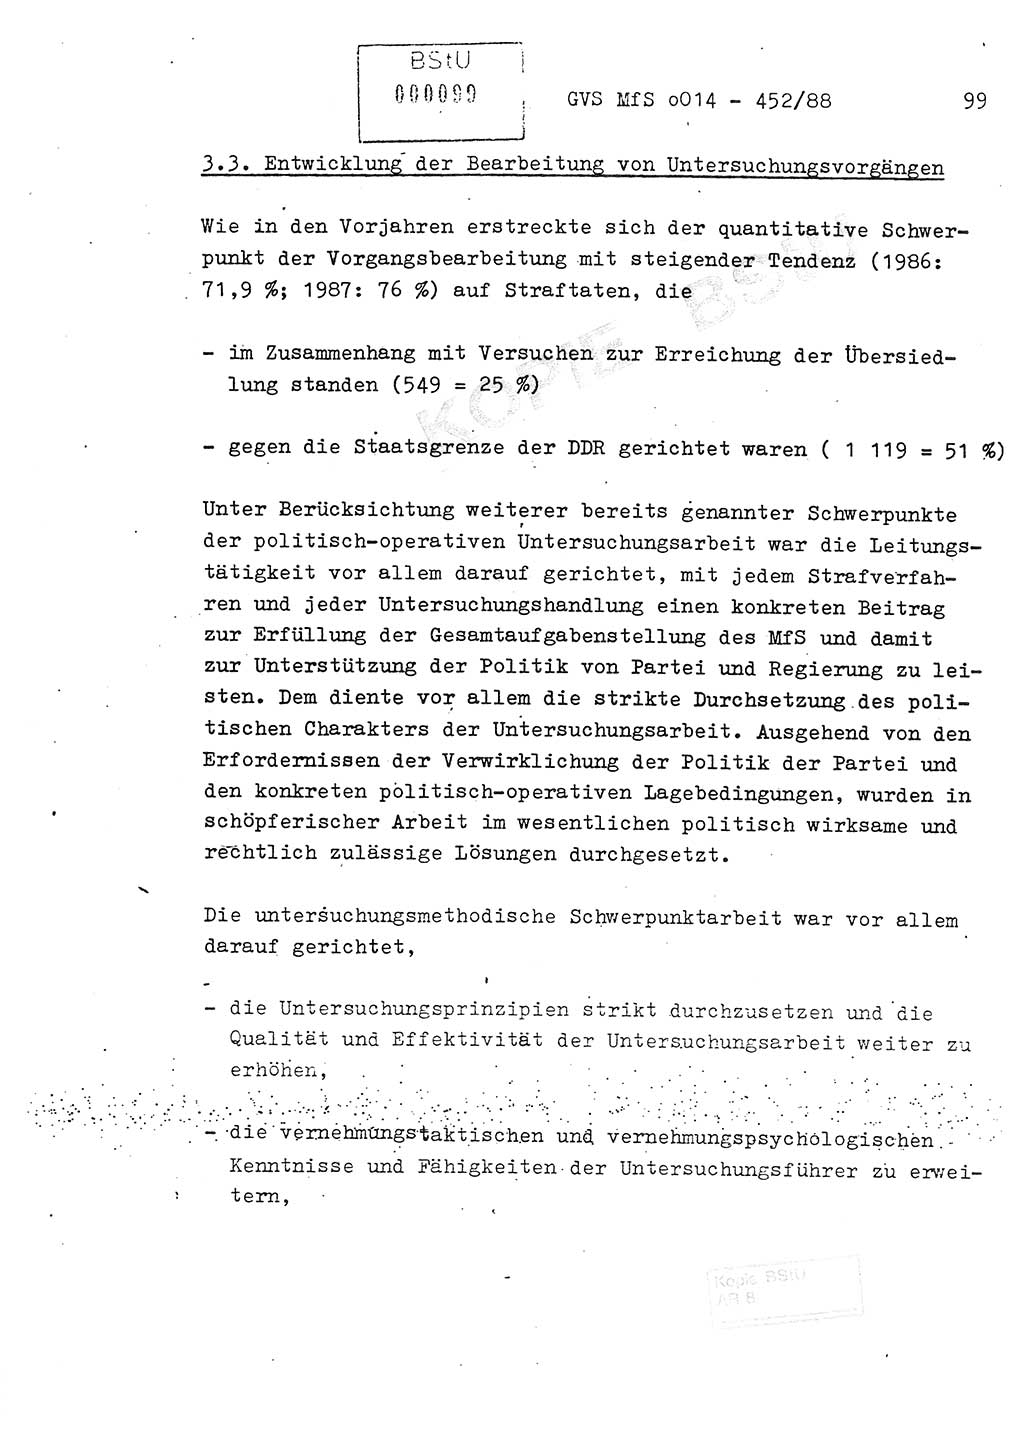 Jahresbericht der Hauptabteilung (HA) Ⅸ 1987, Einschätzung der Wirksamkeit der Untersuchungsarbeit im Jahre 1987, Ministerium für Staatssicherheit (MfS) der Deutschen Demokratischen Republik (DDR), Hauptabteilung Ⅸ, Geheime Verschlußsache (GVS) o014-452/88, Berlin 1988, Seite 99 (Einsch. MfS DDR HA Ⅸ GVS o014-452/88 1987, S. 99)